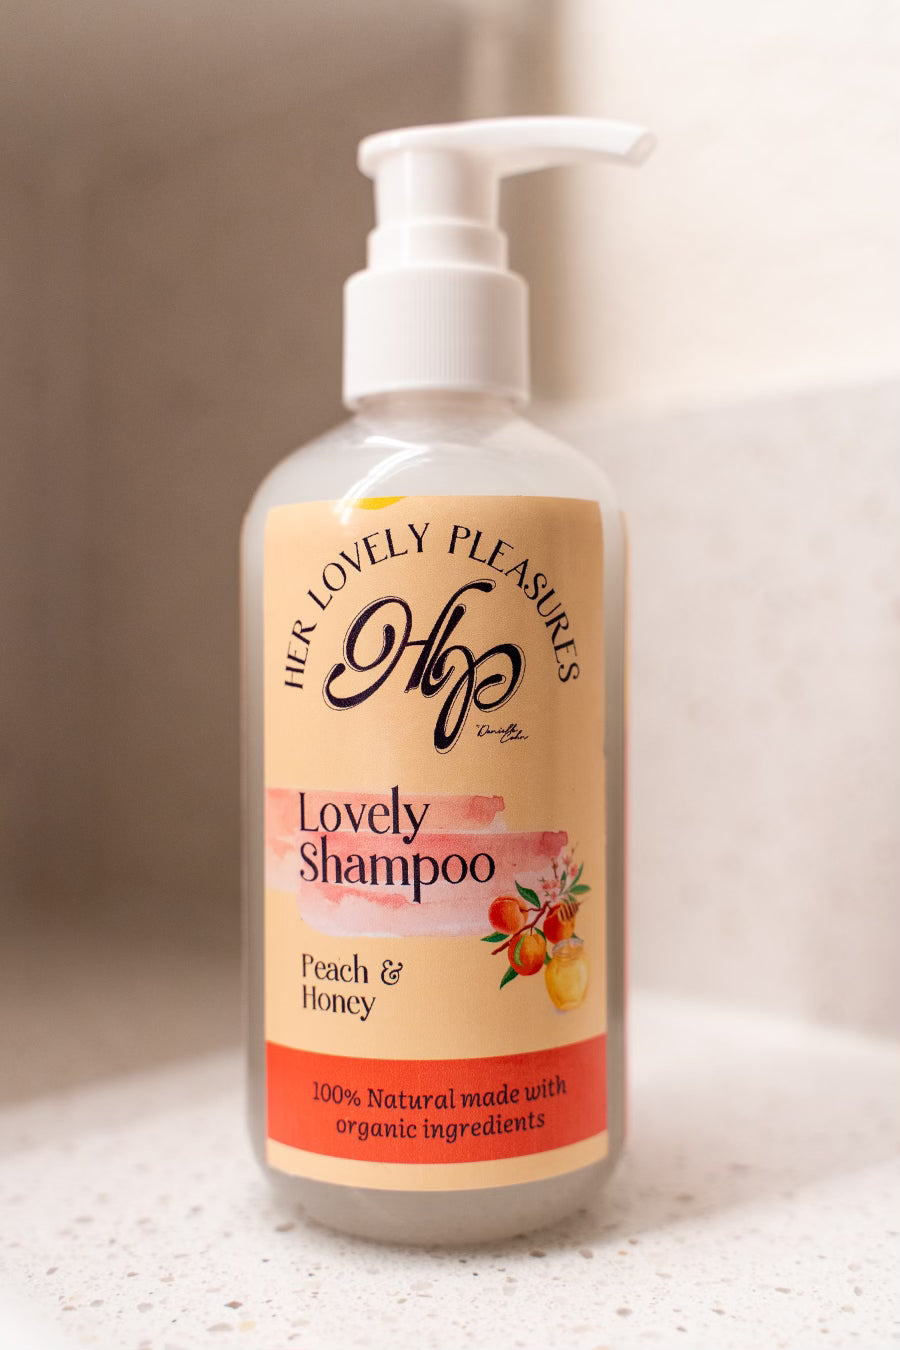 Lovely shampoo – Her Lovely Pleasures